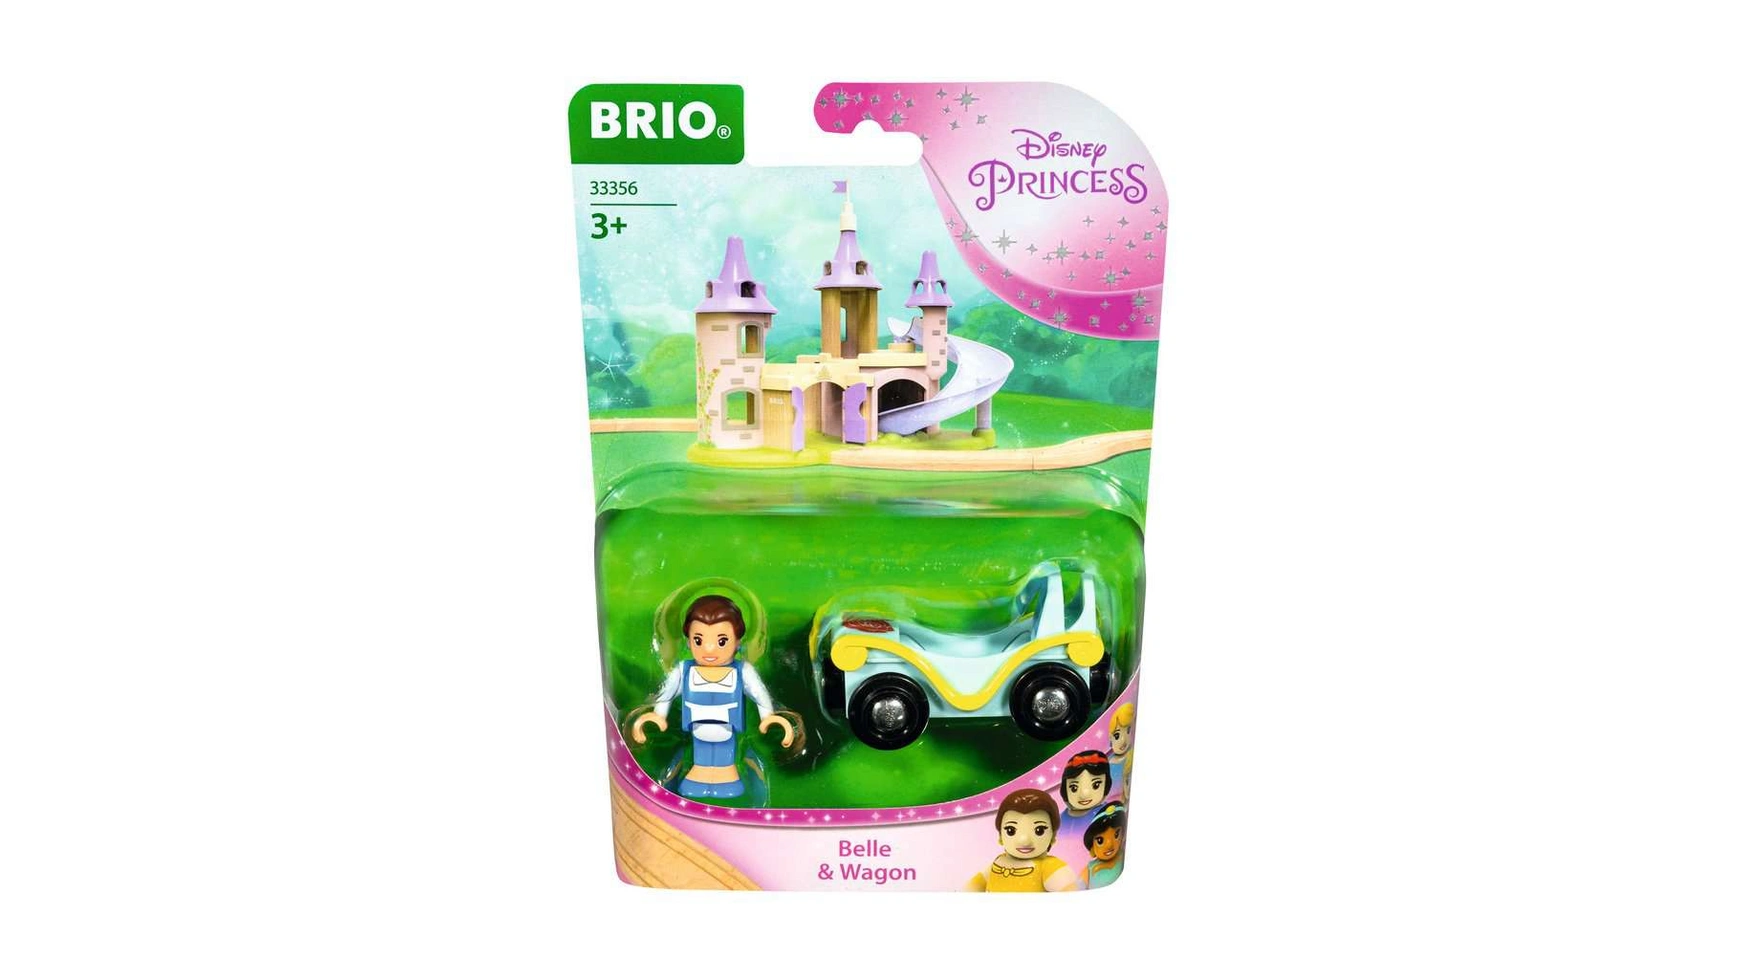 Brio Disney Princess Красавица с вагончиком дополнение к деревянному поезду Brio рекомендуется для детей от 3 лет и старше.